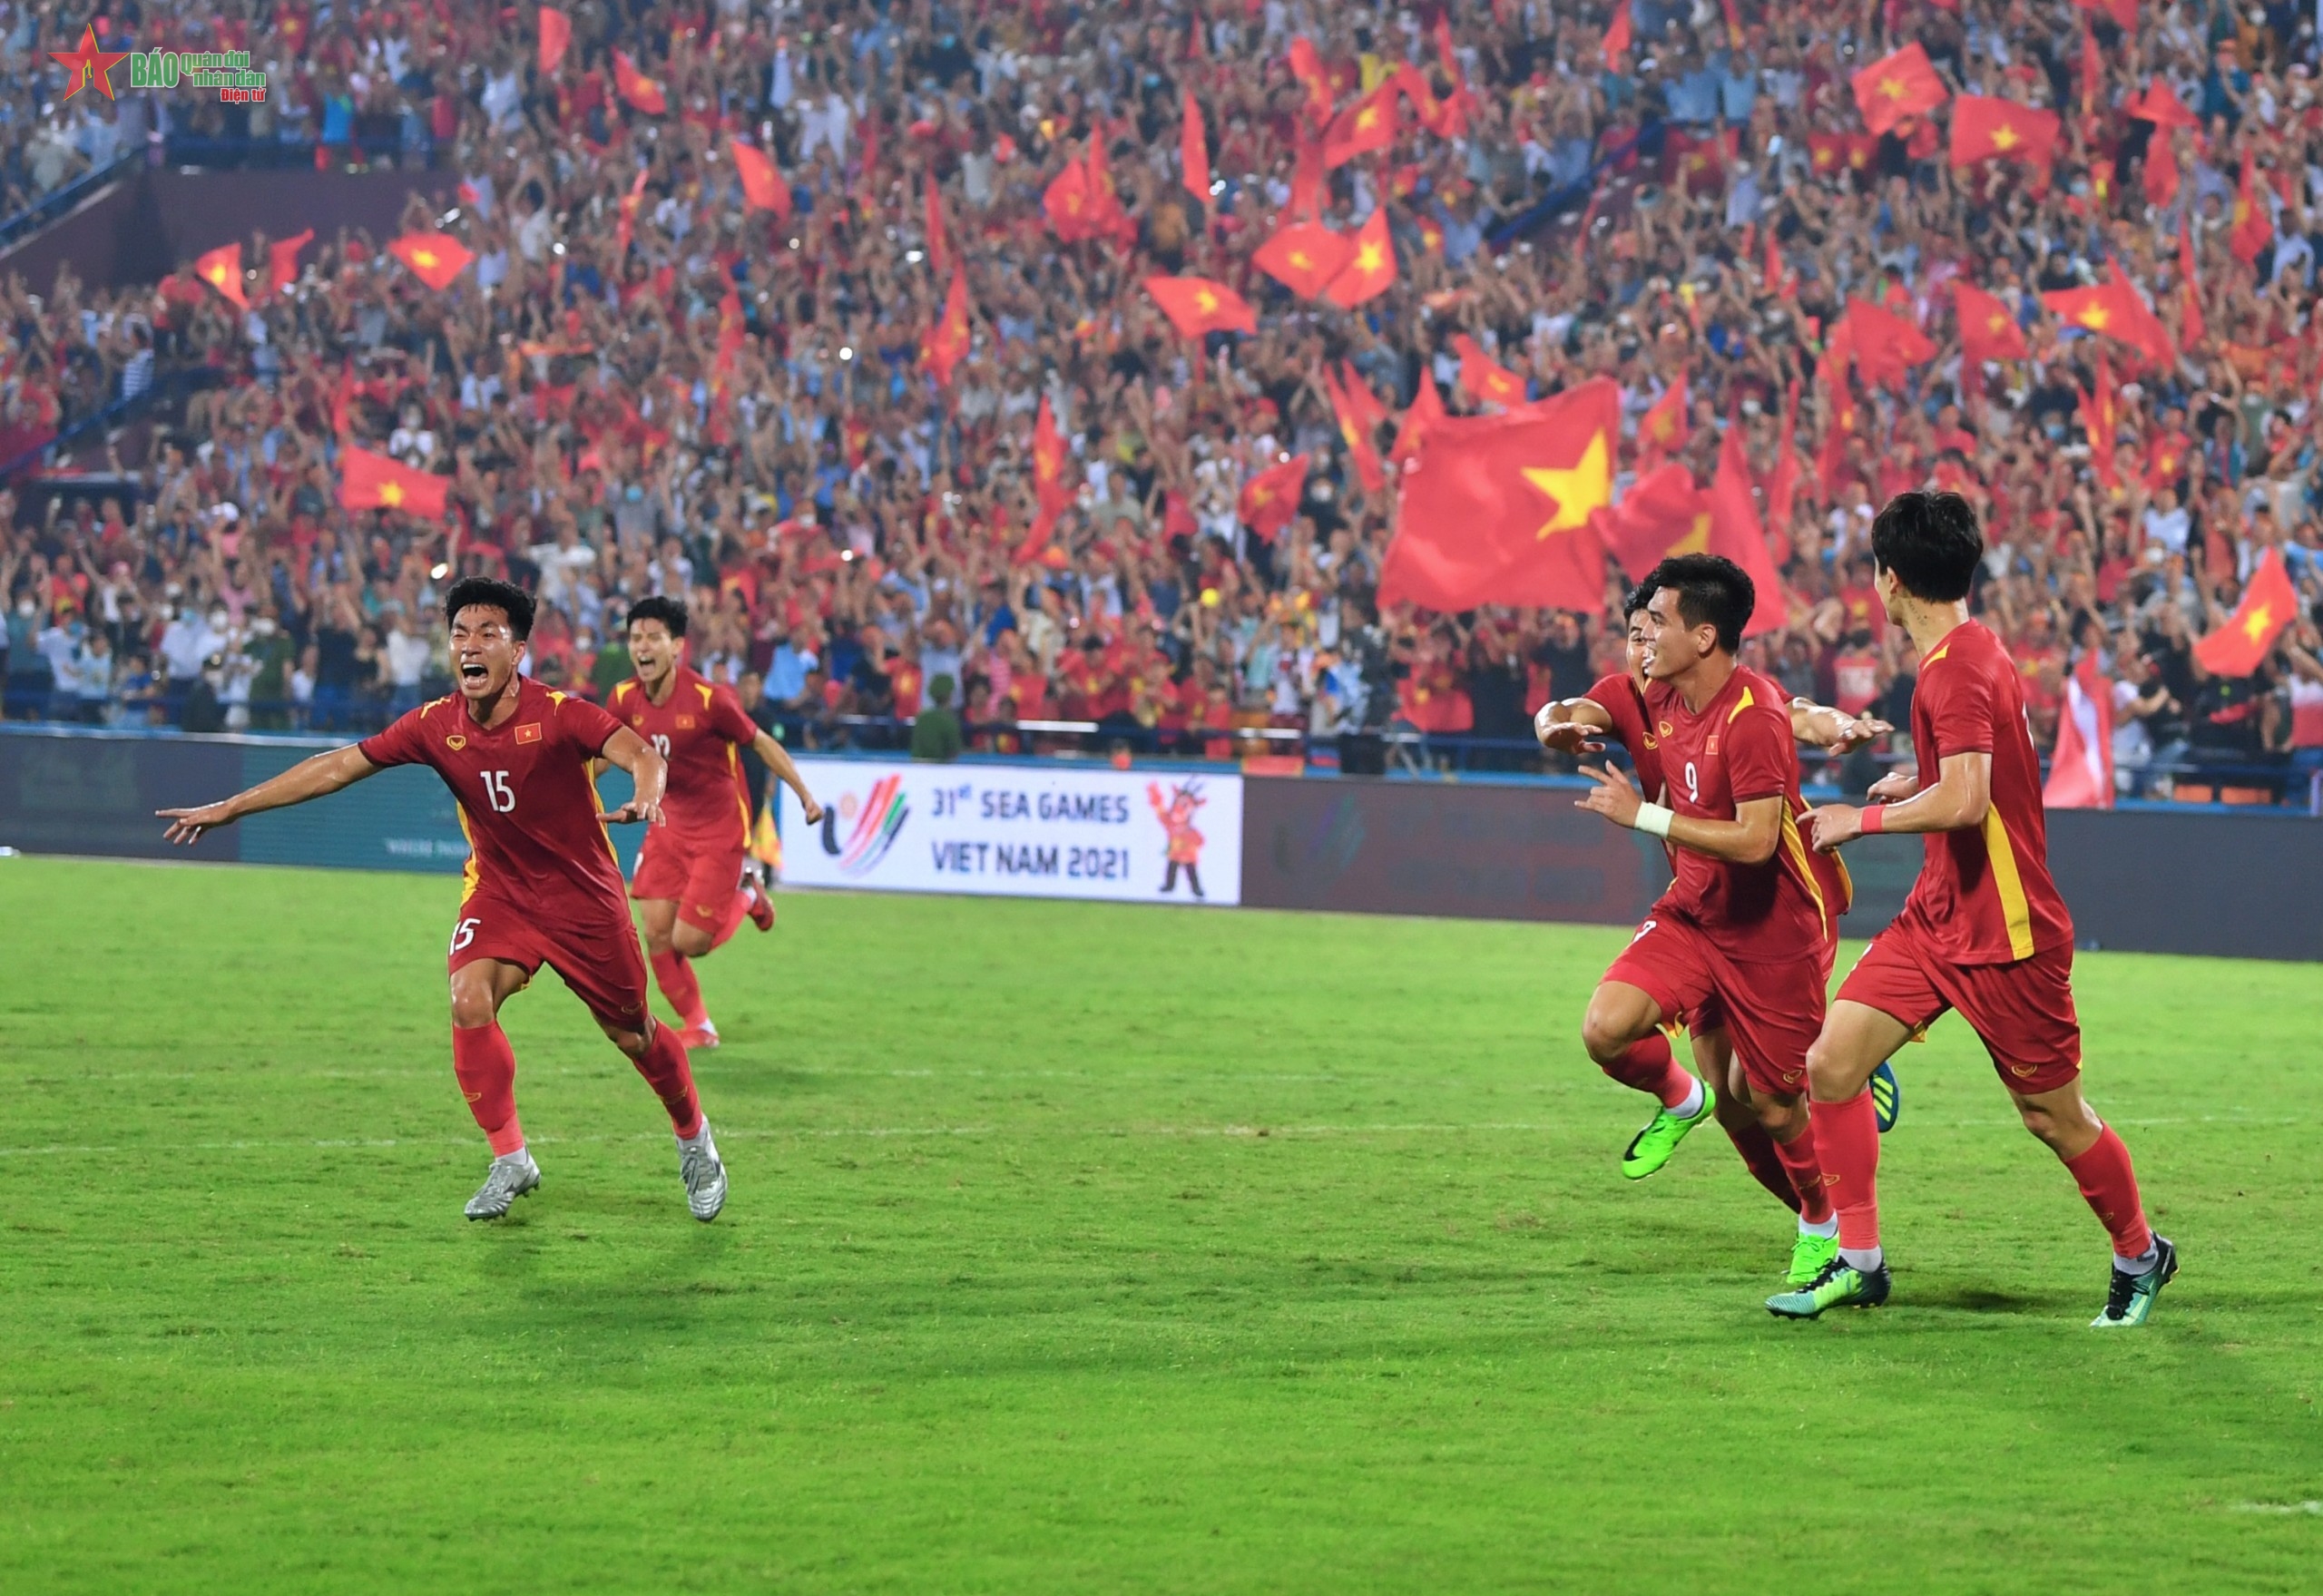 U23 Việt Nam và Tiến Linh - những tài năng trẻ đầy triển vọng lnại là hy vọng lớn của bóng đá Việt Nam. Bàn thắng vàng của Tiến Linh tại SEA Games 30 sẽ làm bạn xúc động và tự hào. Hãy cùng xem lại những khoảnh khắc đáng nhớ đó!